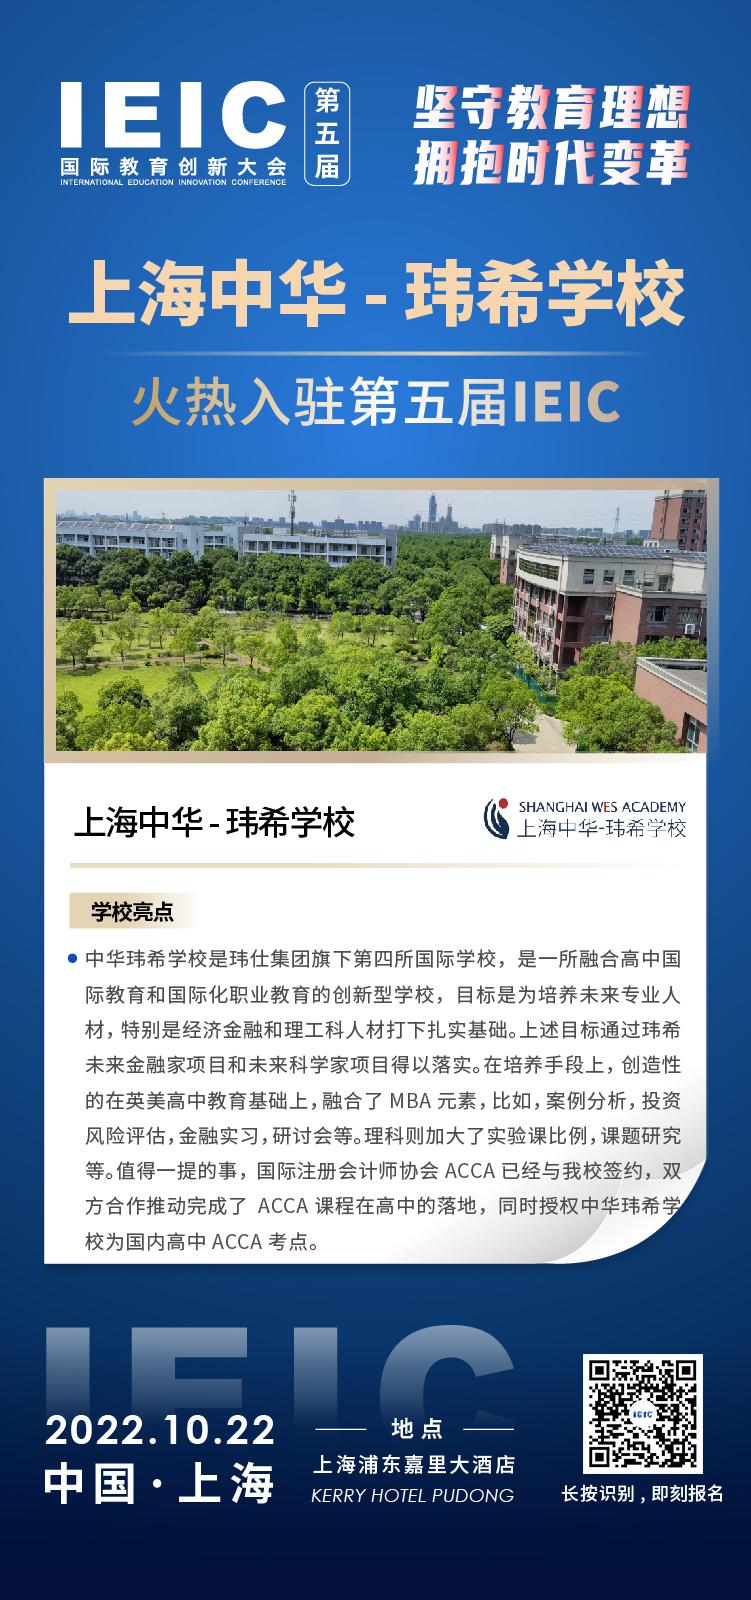 上海中华玮希学校成功入驻参加2022年远播第五届IEIC国际教育创新大会